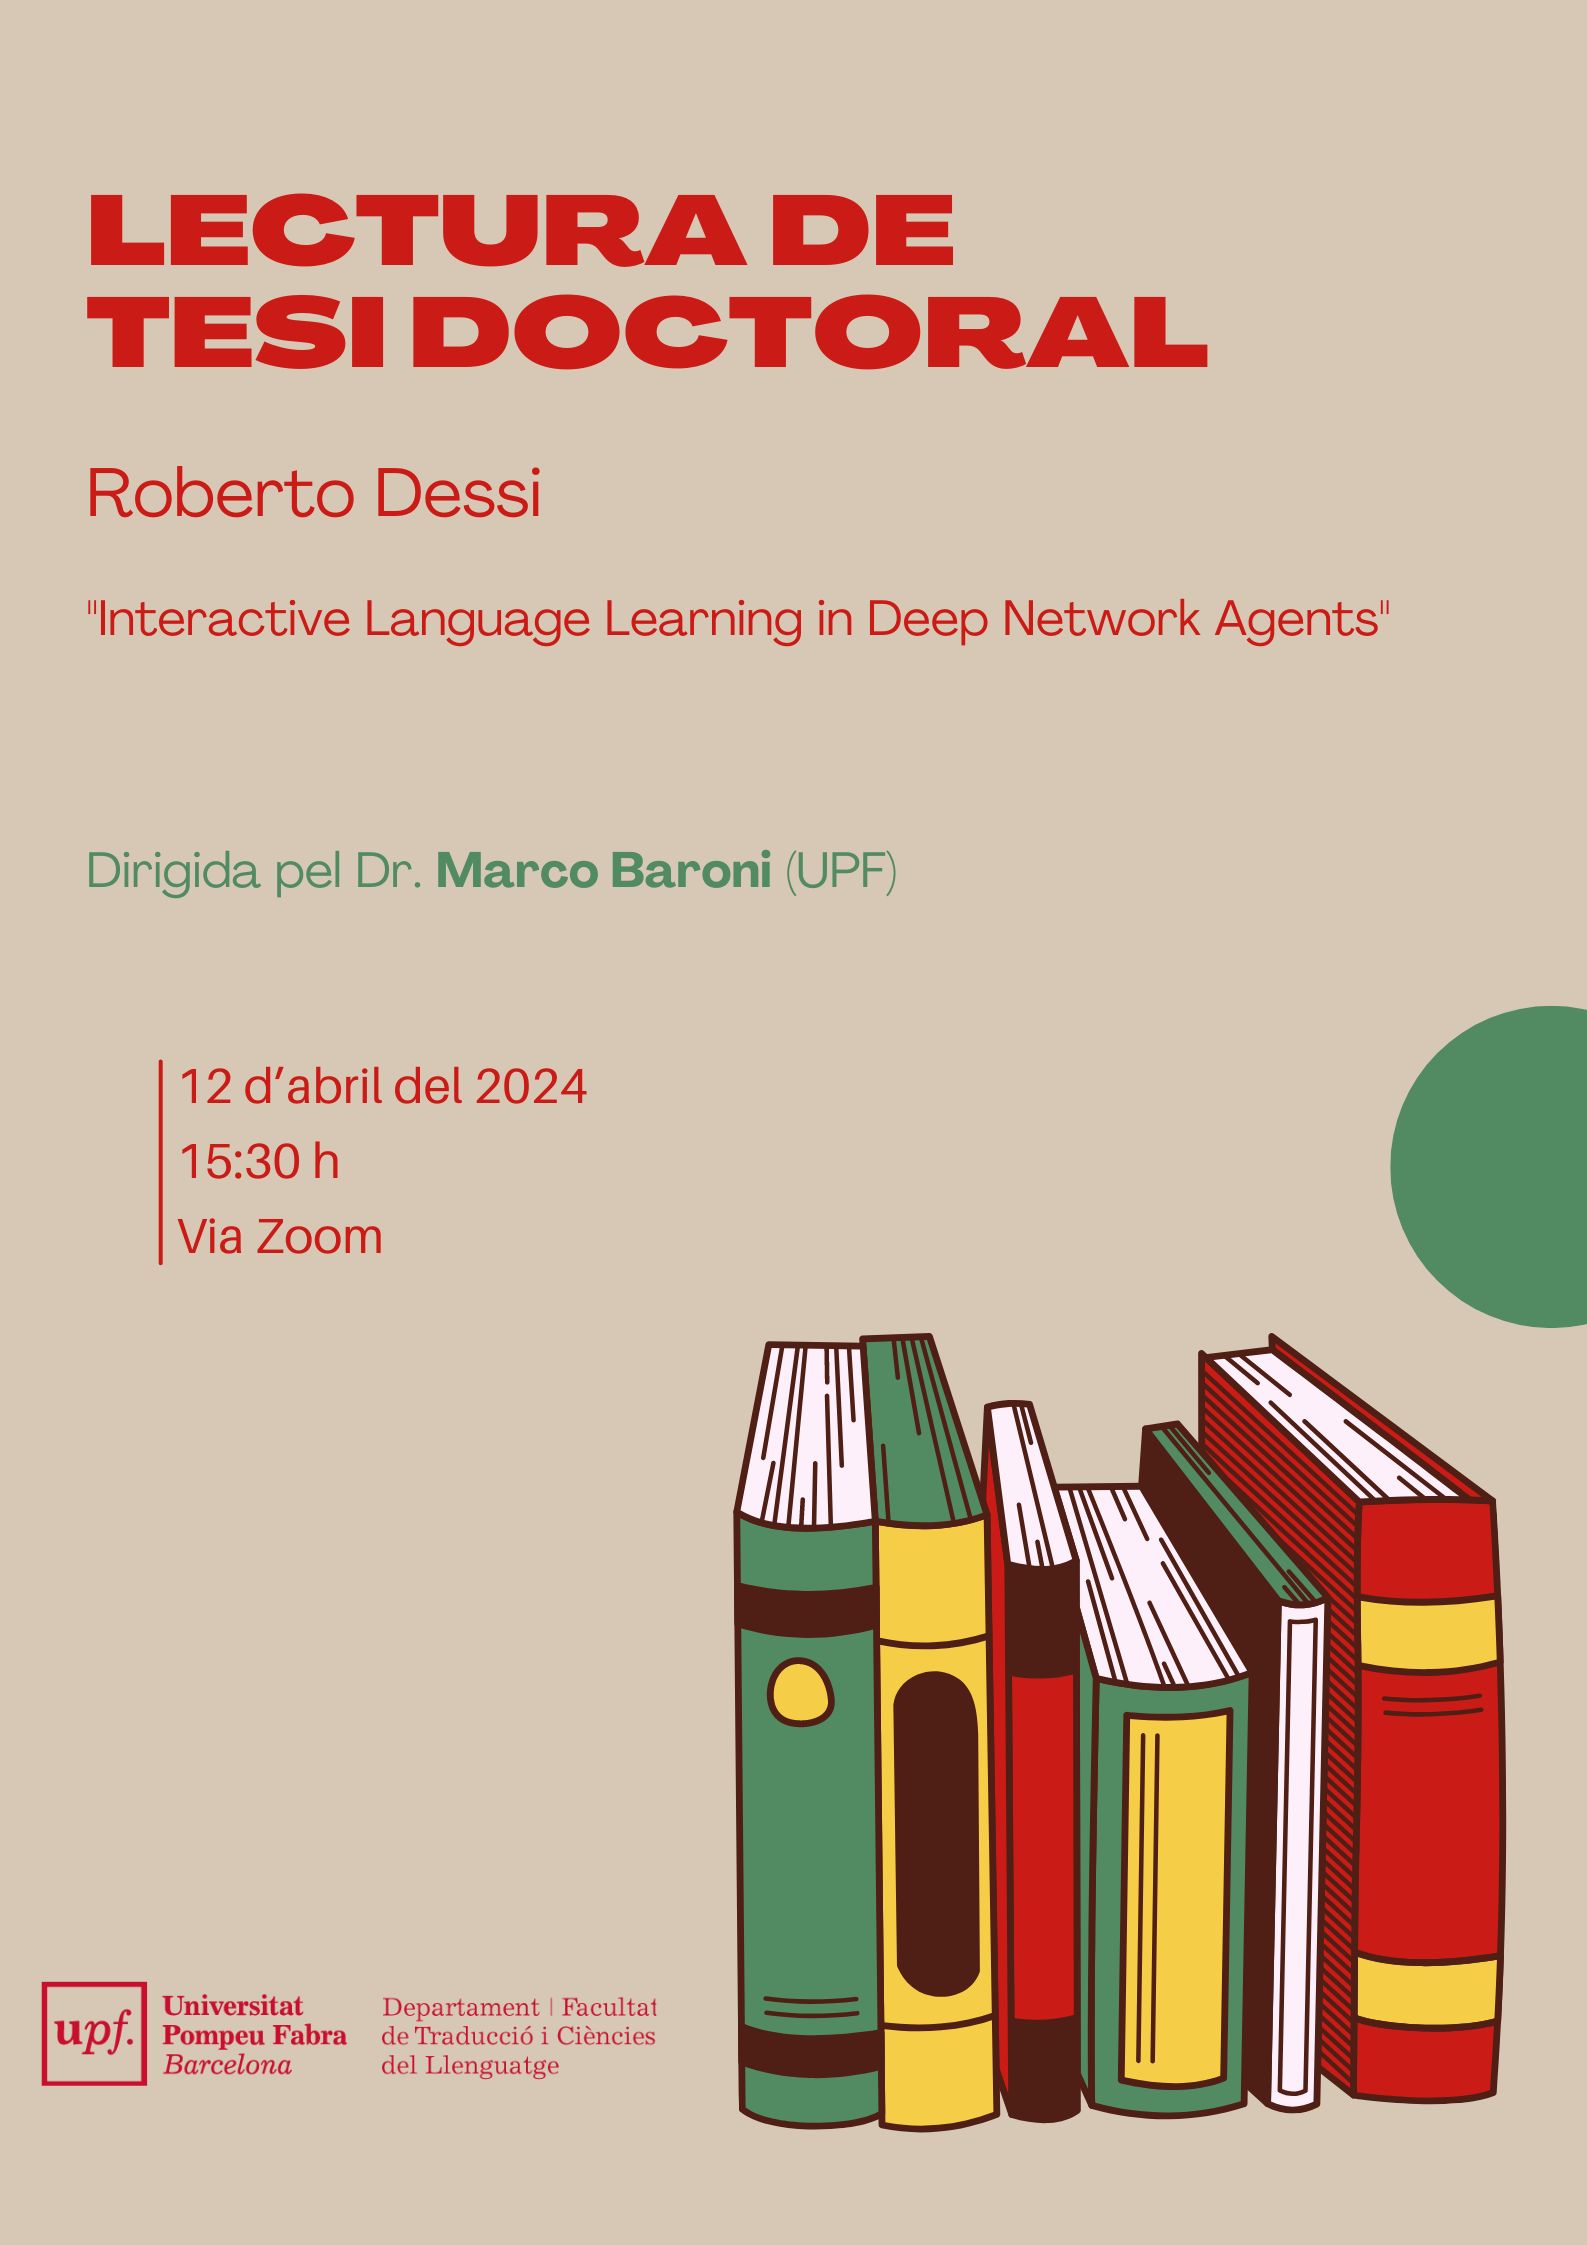 12/04/2024 Lectura de la tesi doctoral de Roberto Dessi, a les 15.30 hores